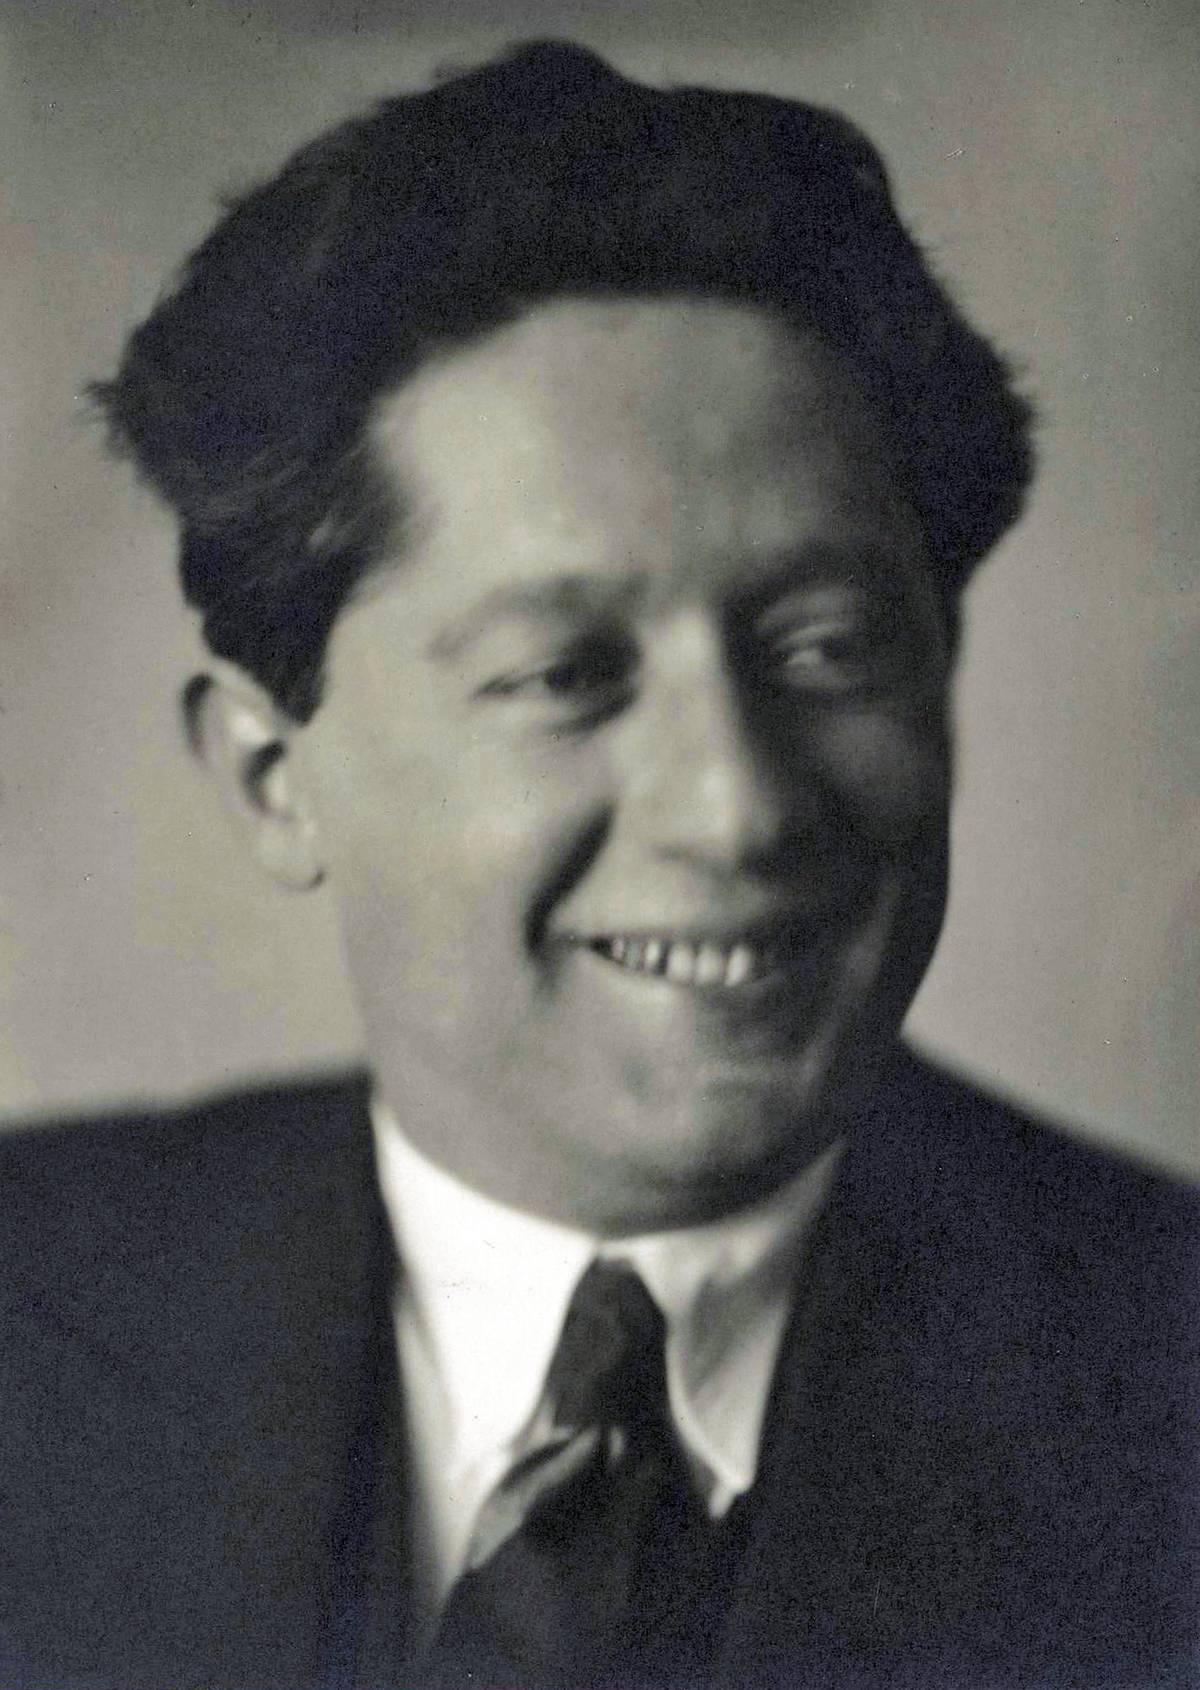 An undated photo of Saul Lieberman